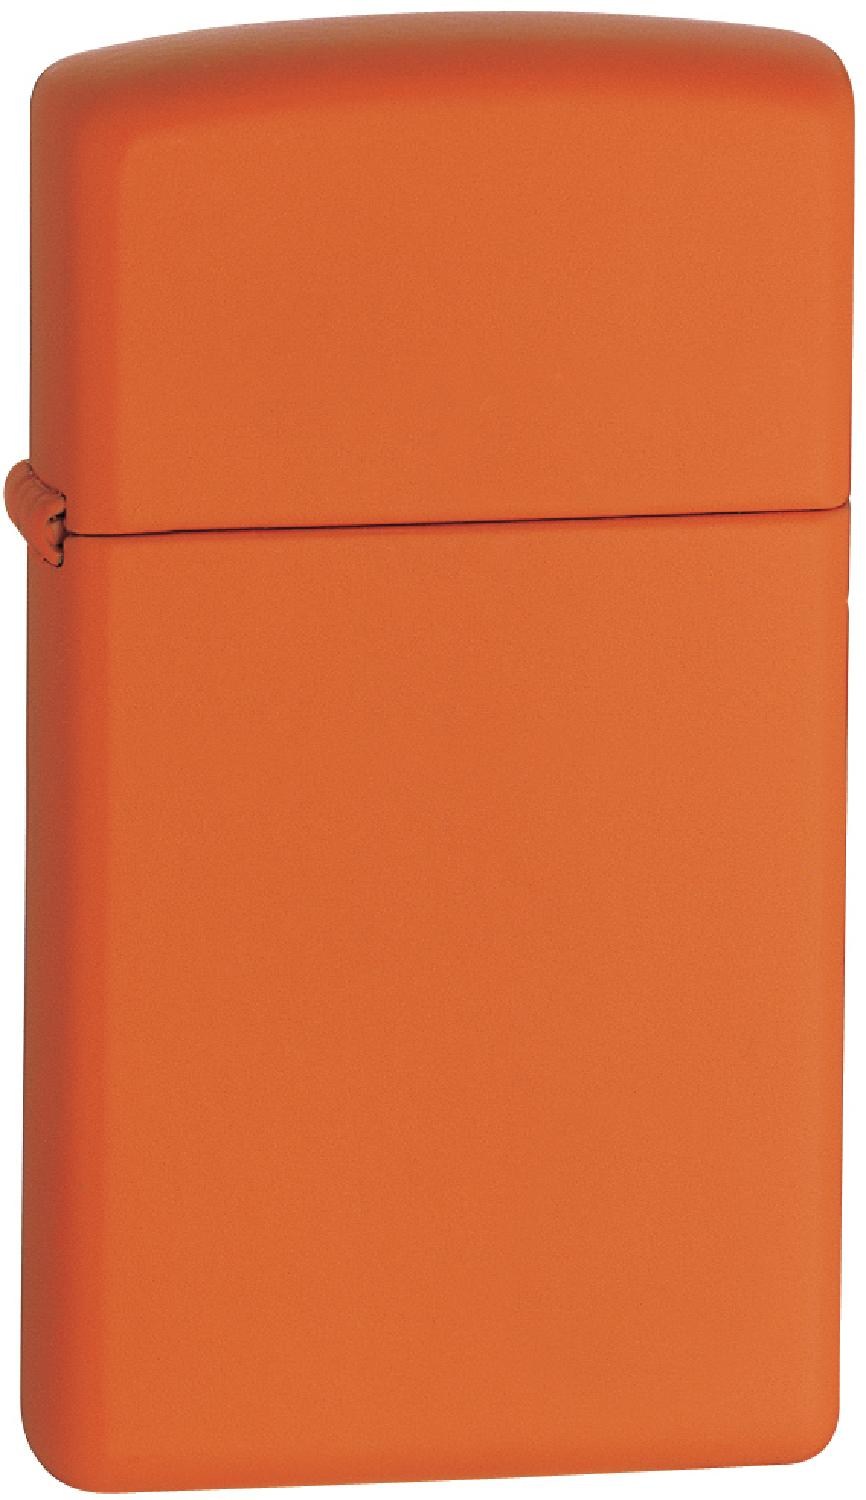 Ветрозащитная зажигалка Zippo, оранжевый креативная зажигалка для игральных карт ace of spades бутановая ветрозащитная прямая металлическая зажигалка забавная металлическая игрушка